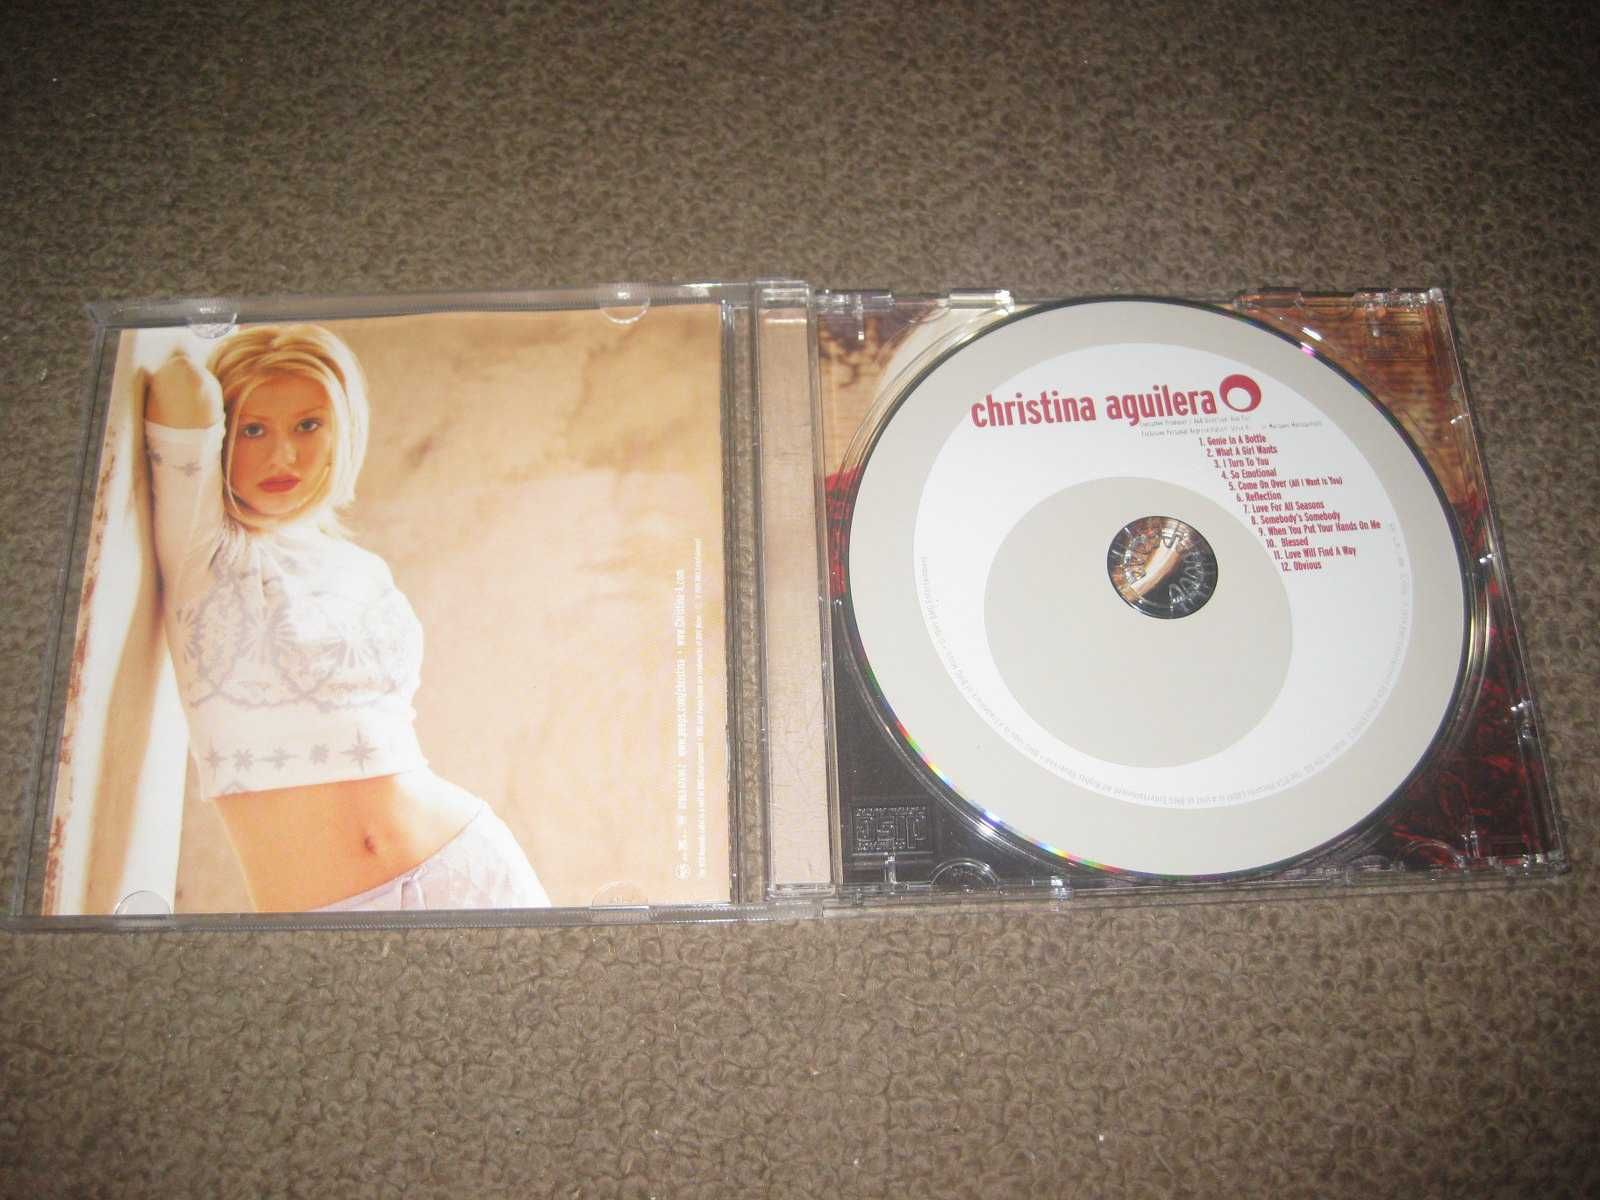 CD da Christina Aguilera/Portes Grátis!